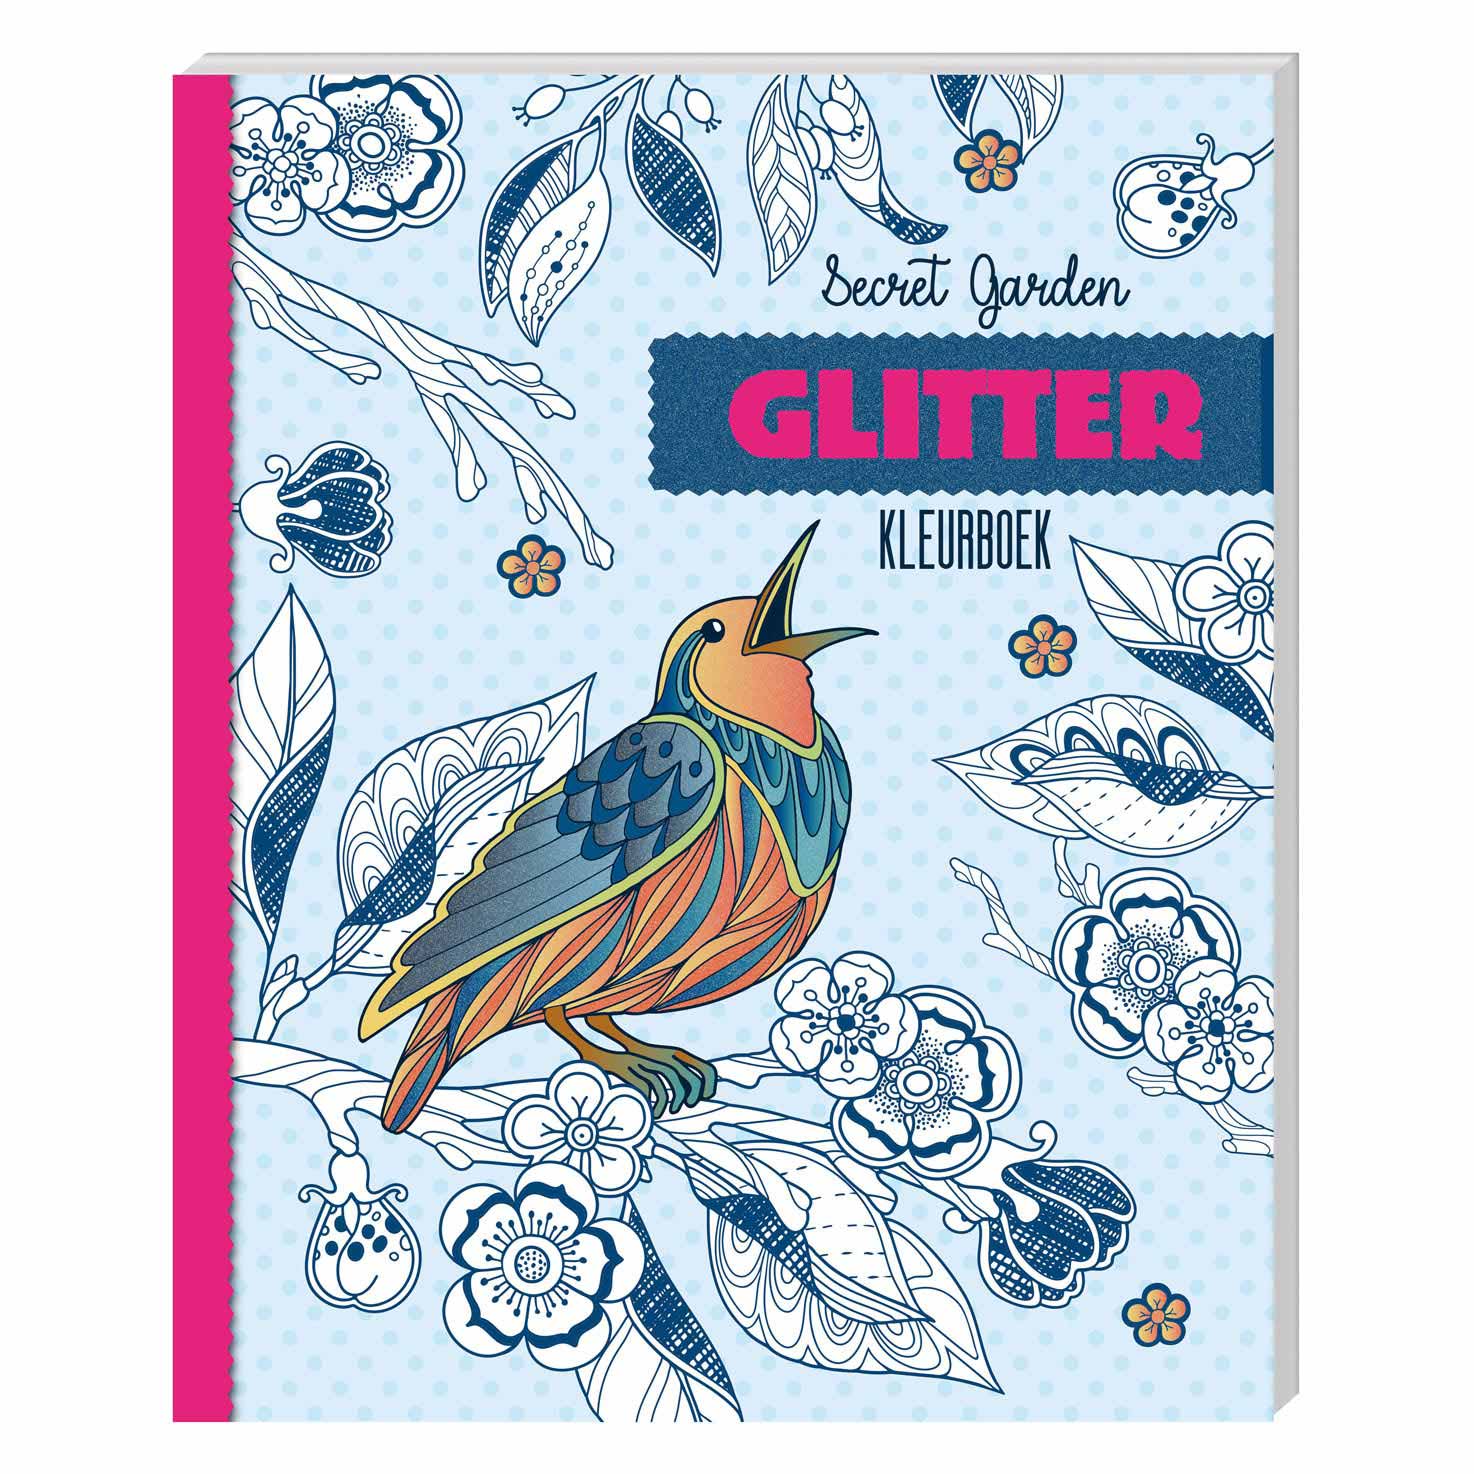 breng de actie Van toepassing zijn Agressief Glitter kleurboek - Secret Garden Kopen? ⋆ Invulboekjes.nl